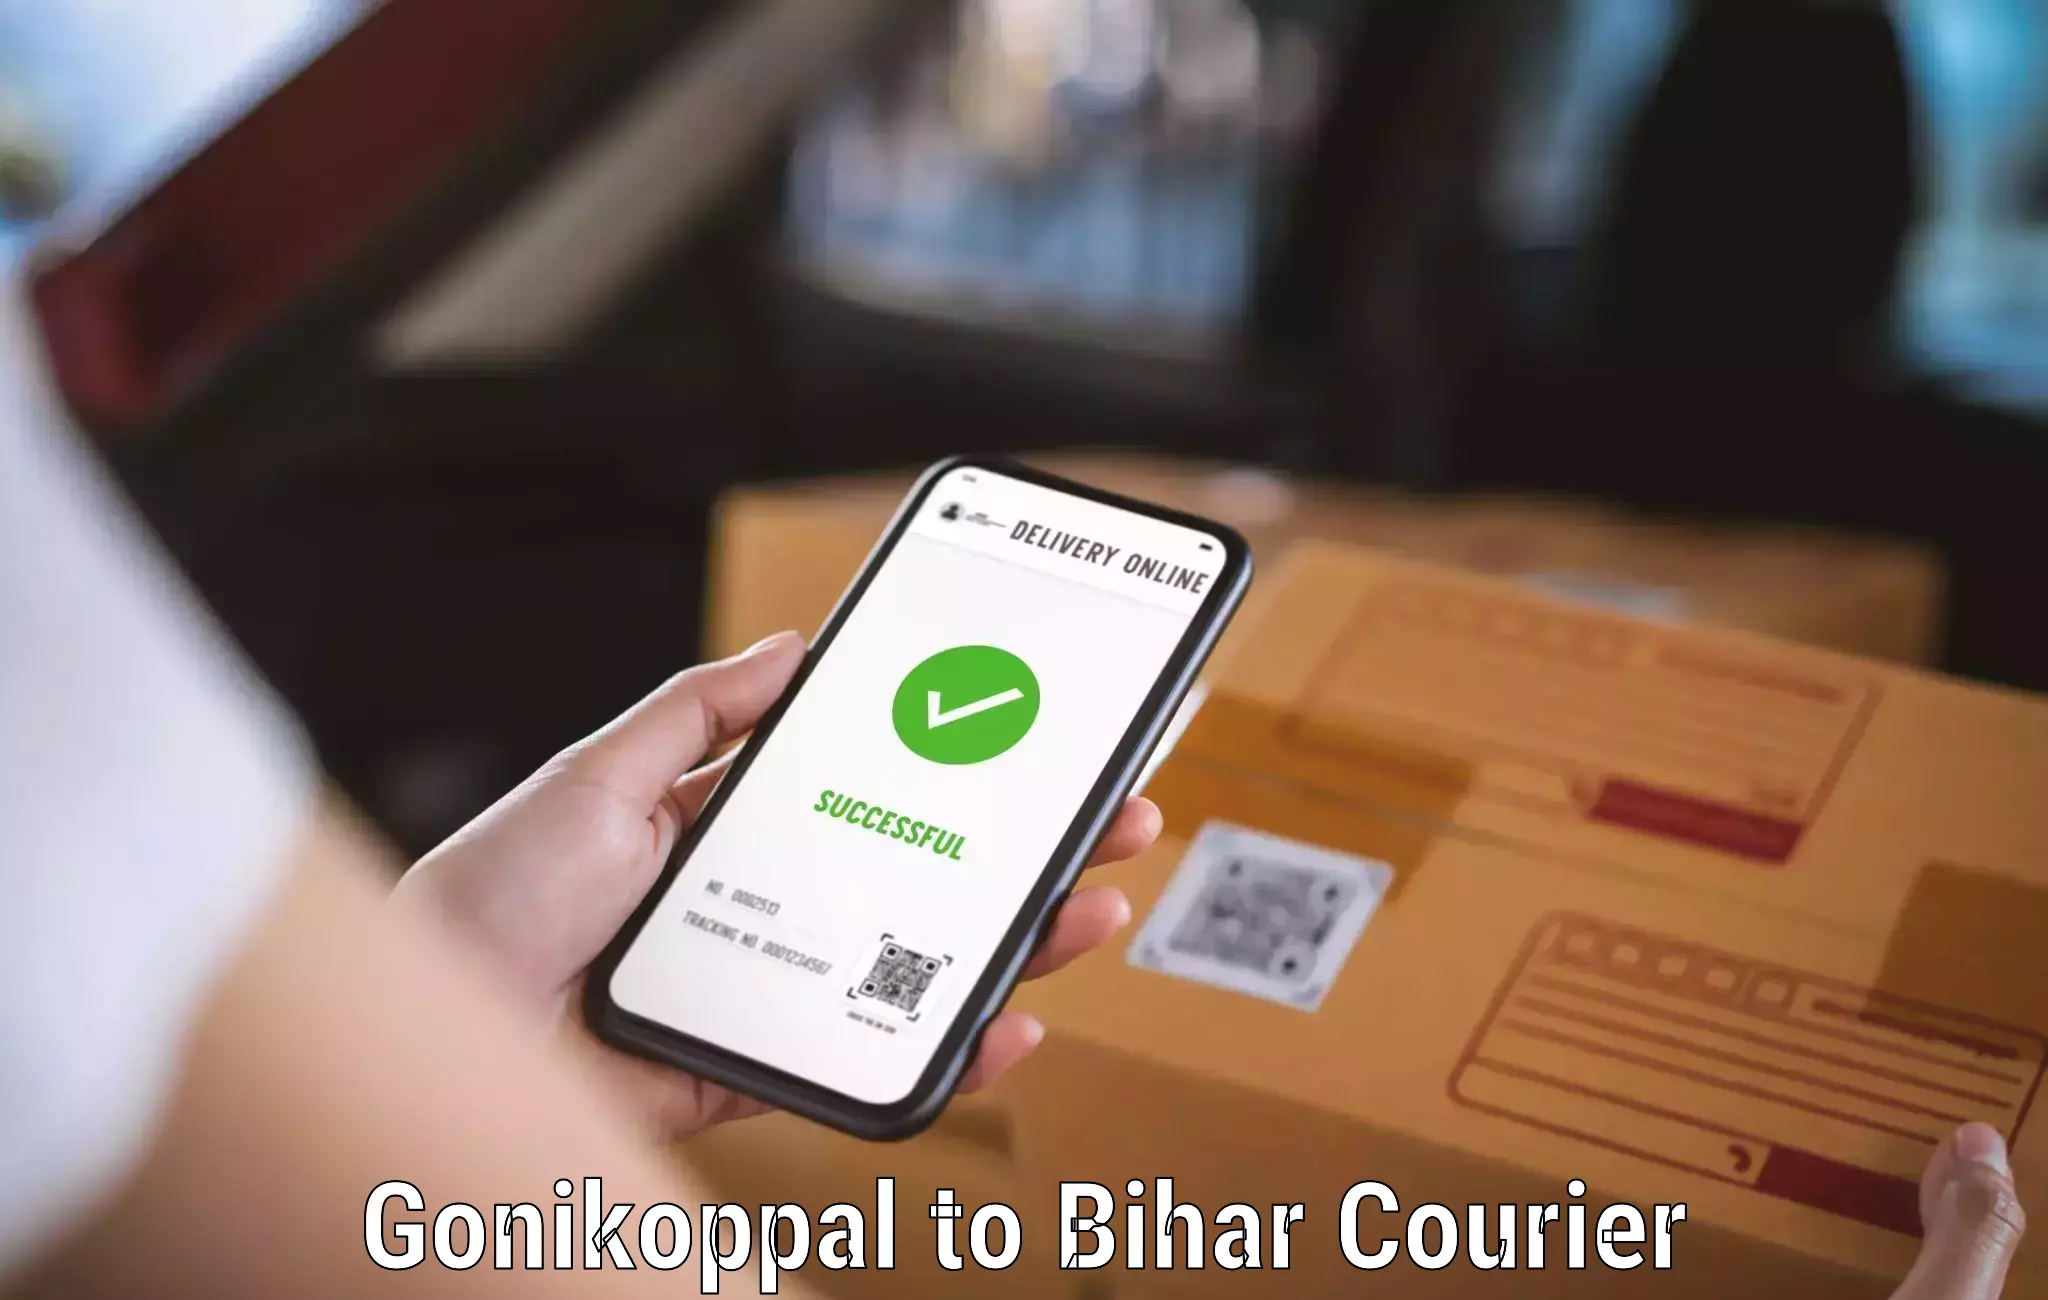 Bulk shipment Gonikoppal to Lalganj Vaishali